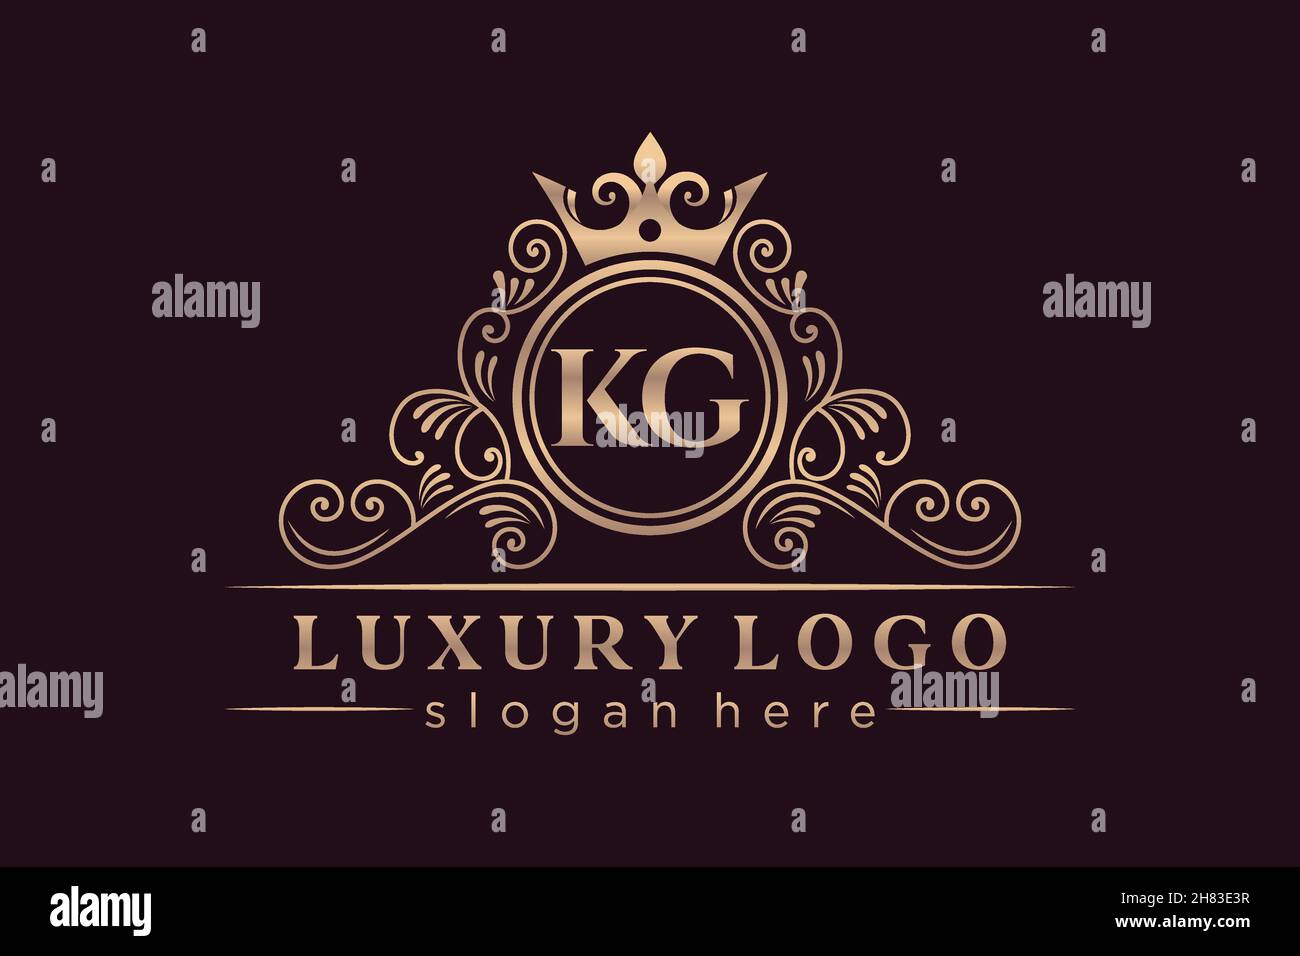 KG Initial Letter Gold calligraphic feminine floral hand drawn heraldic monogram antique vintage style luxury logo design Premium Stock Vector